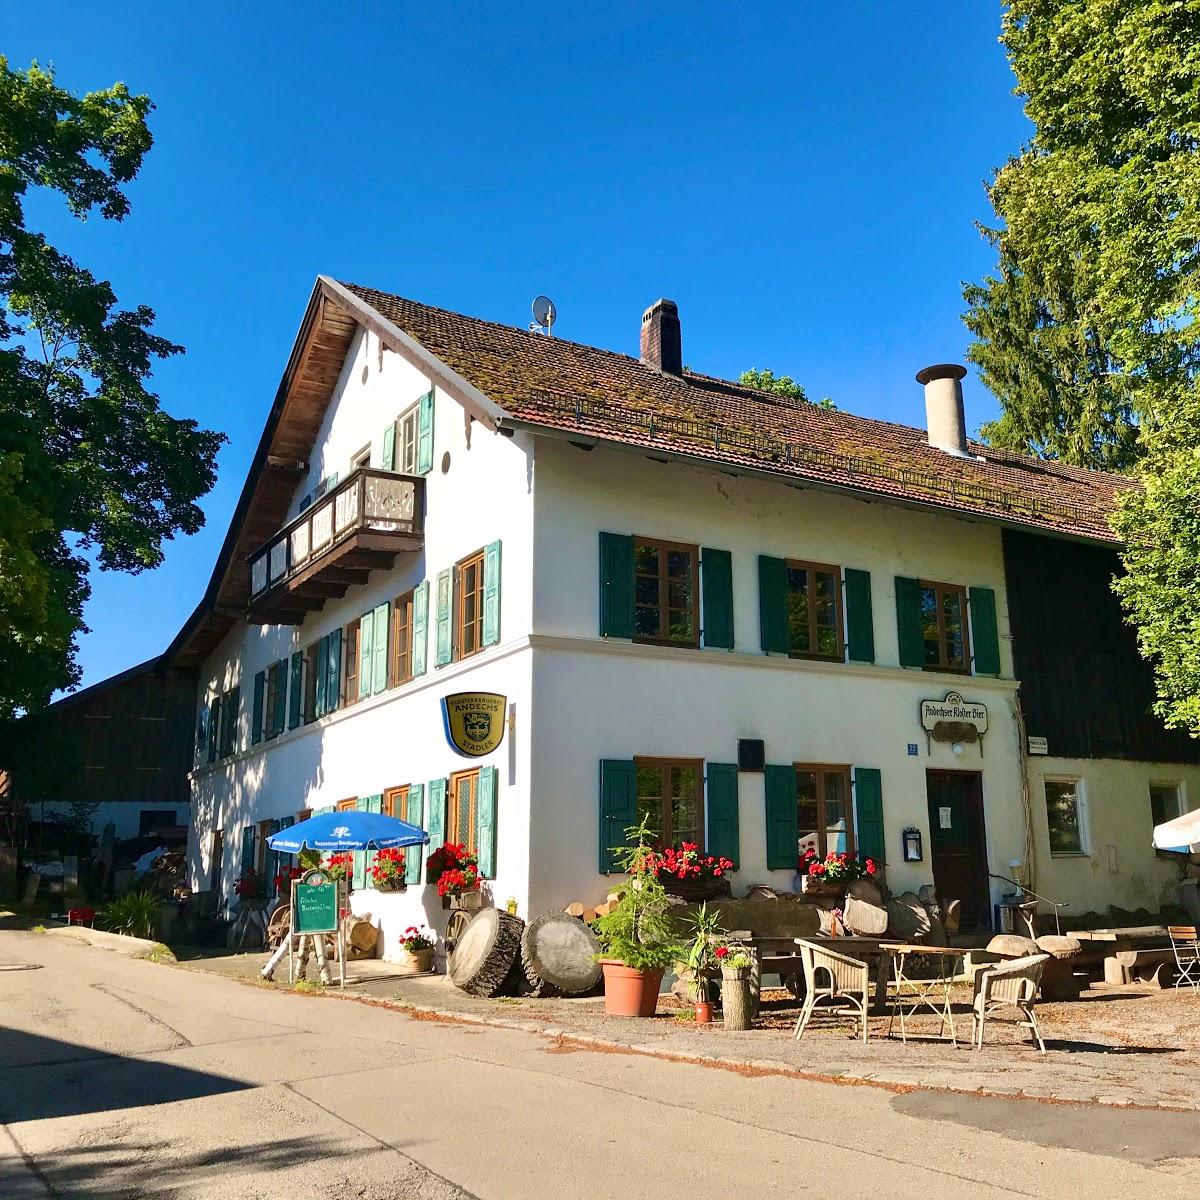 Restaurant "Gasthaus Stadler" in  Tutzing